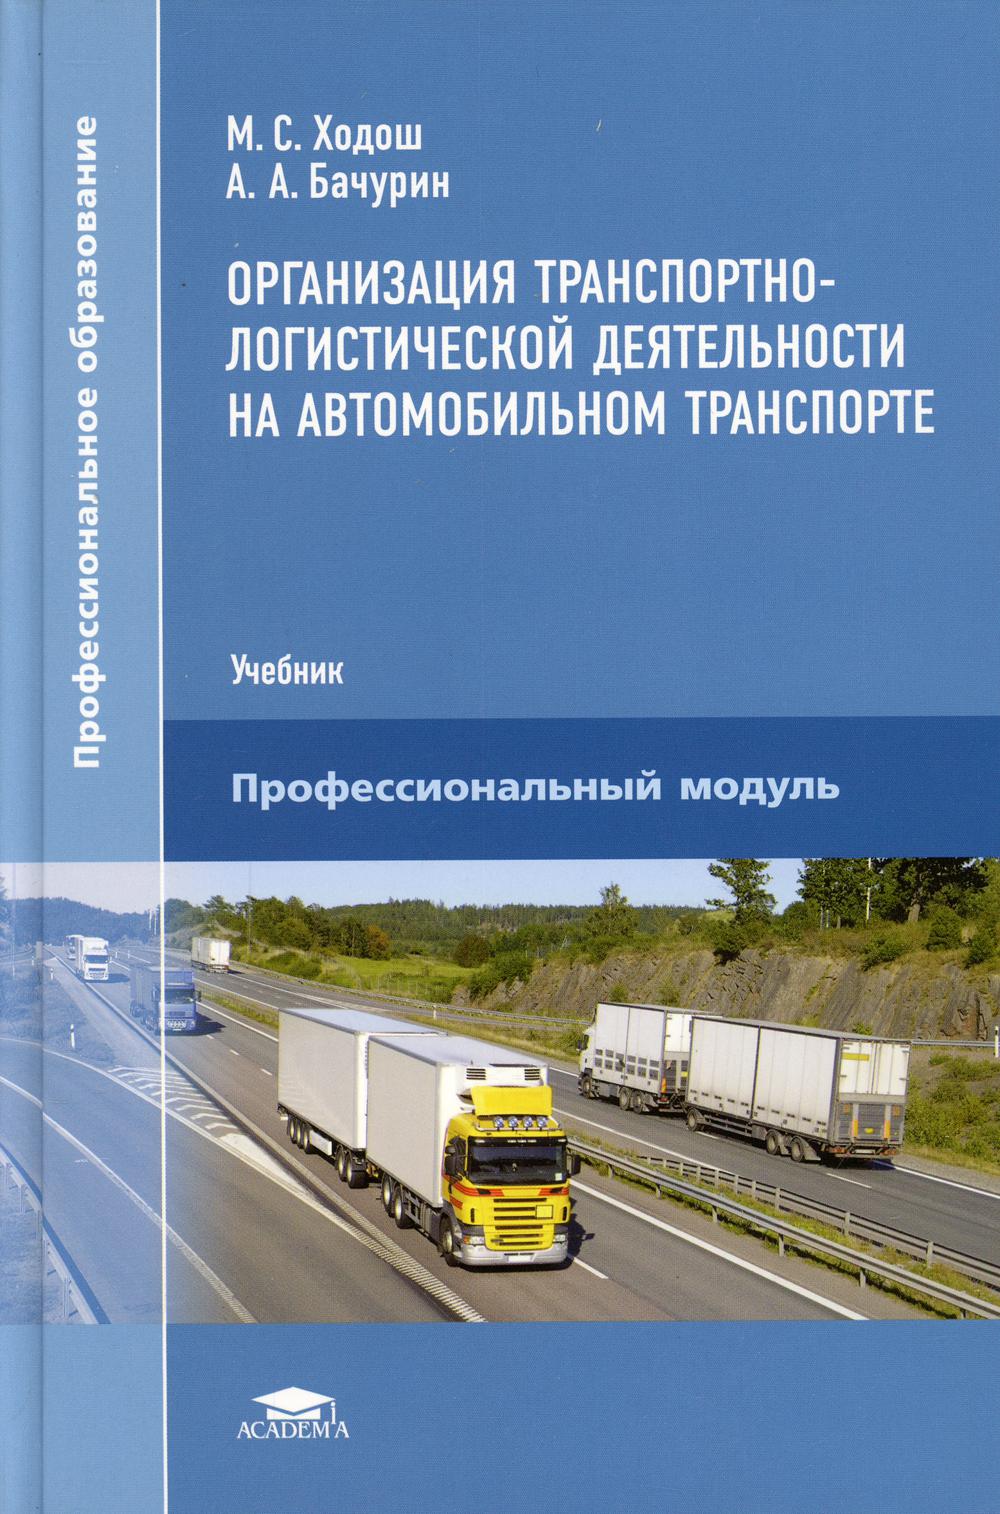 фото Книга организация транспортно-логистической деятельности на автомобильном транспорте academia